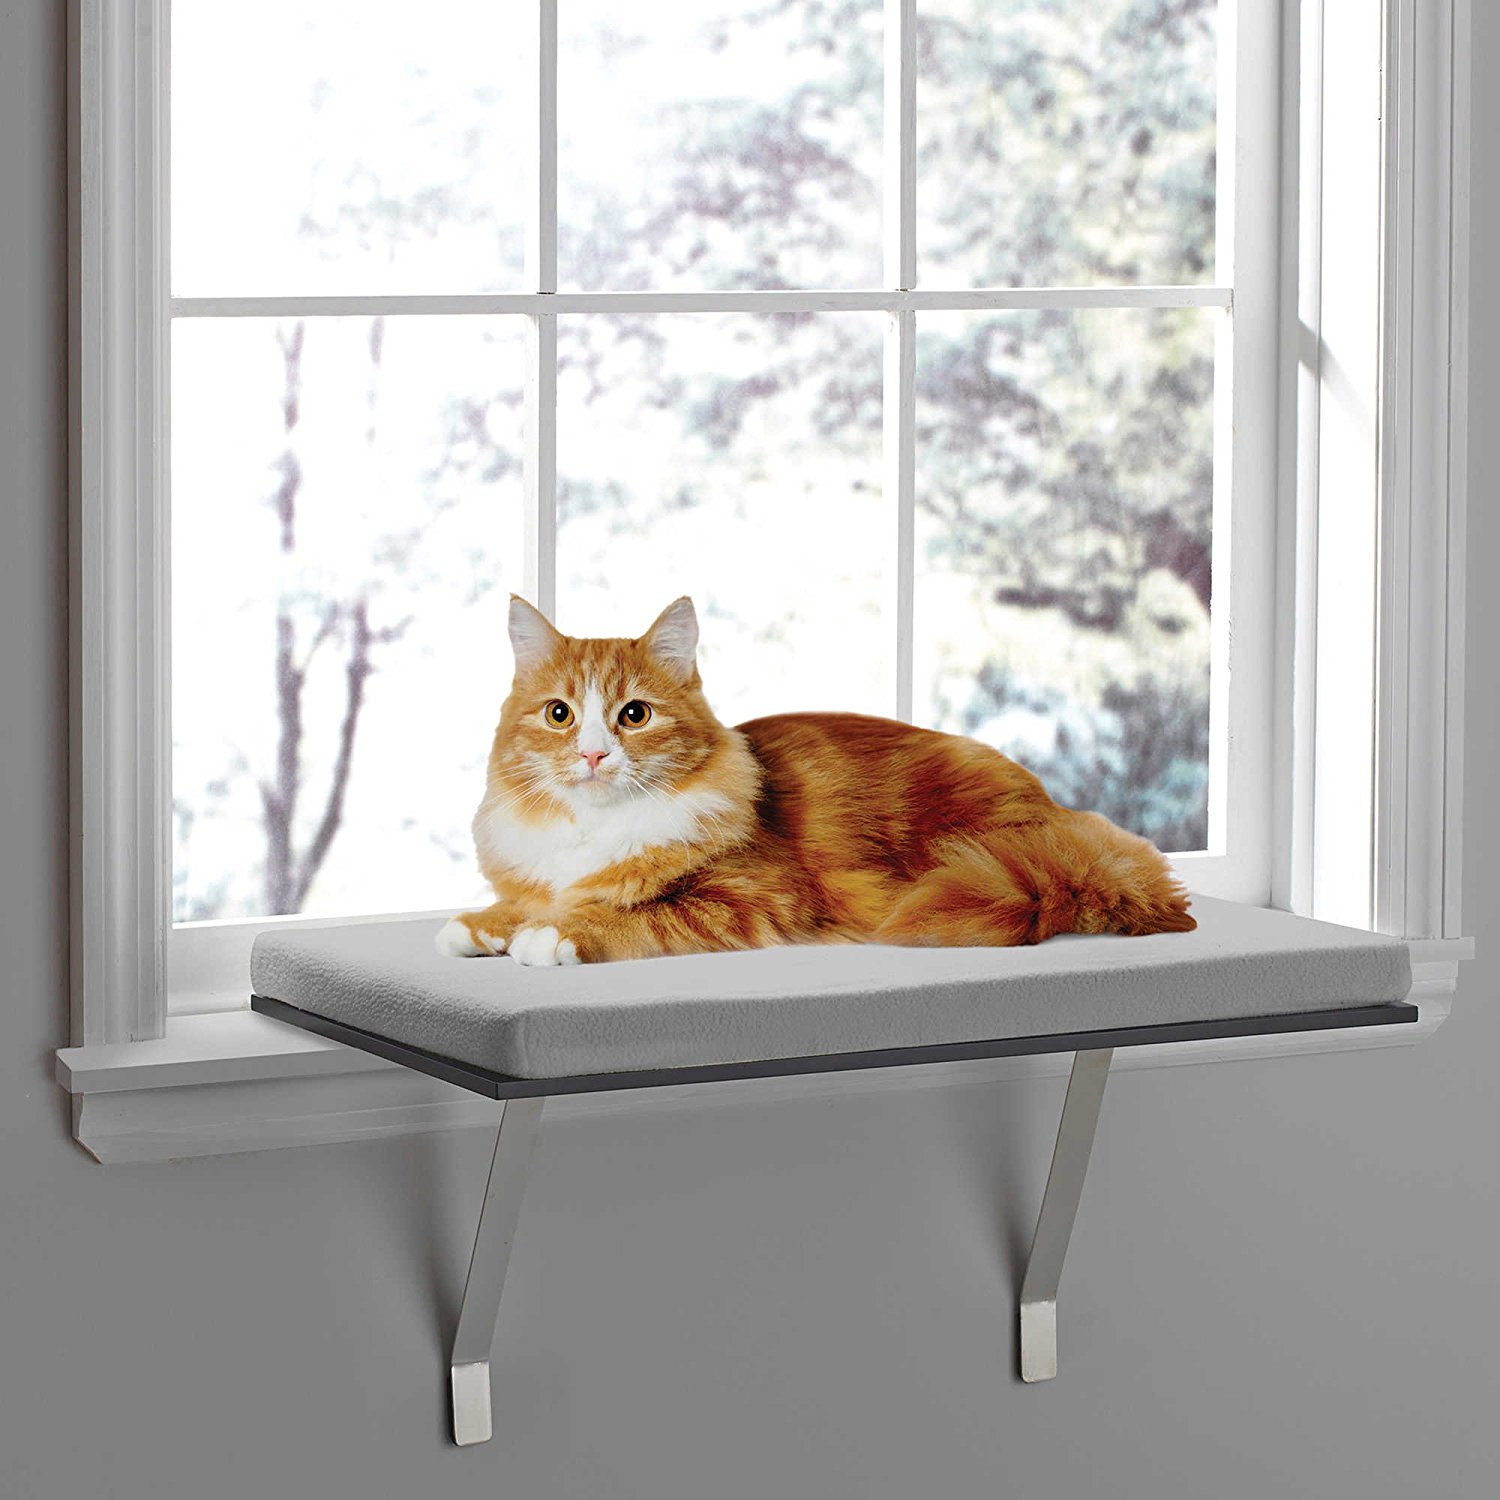 Amazon.com : Deluxe Pet Cat Window Seat Perch : Pet Supplies